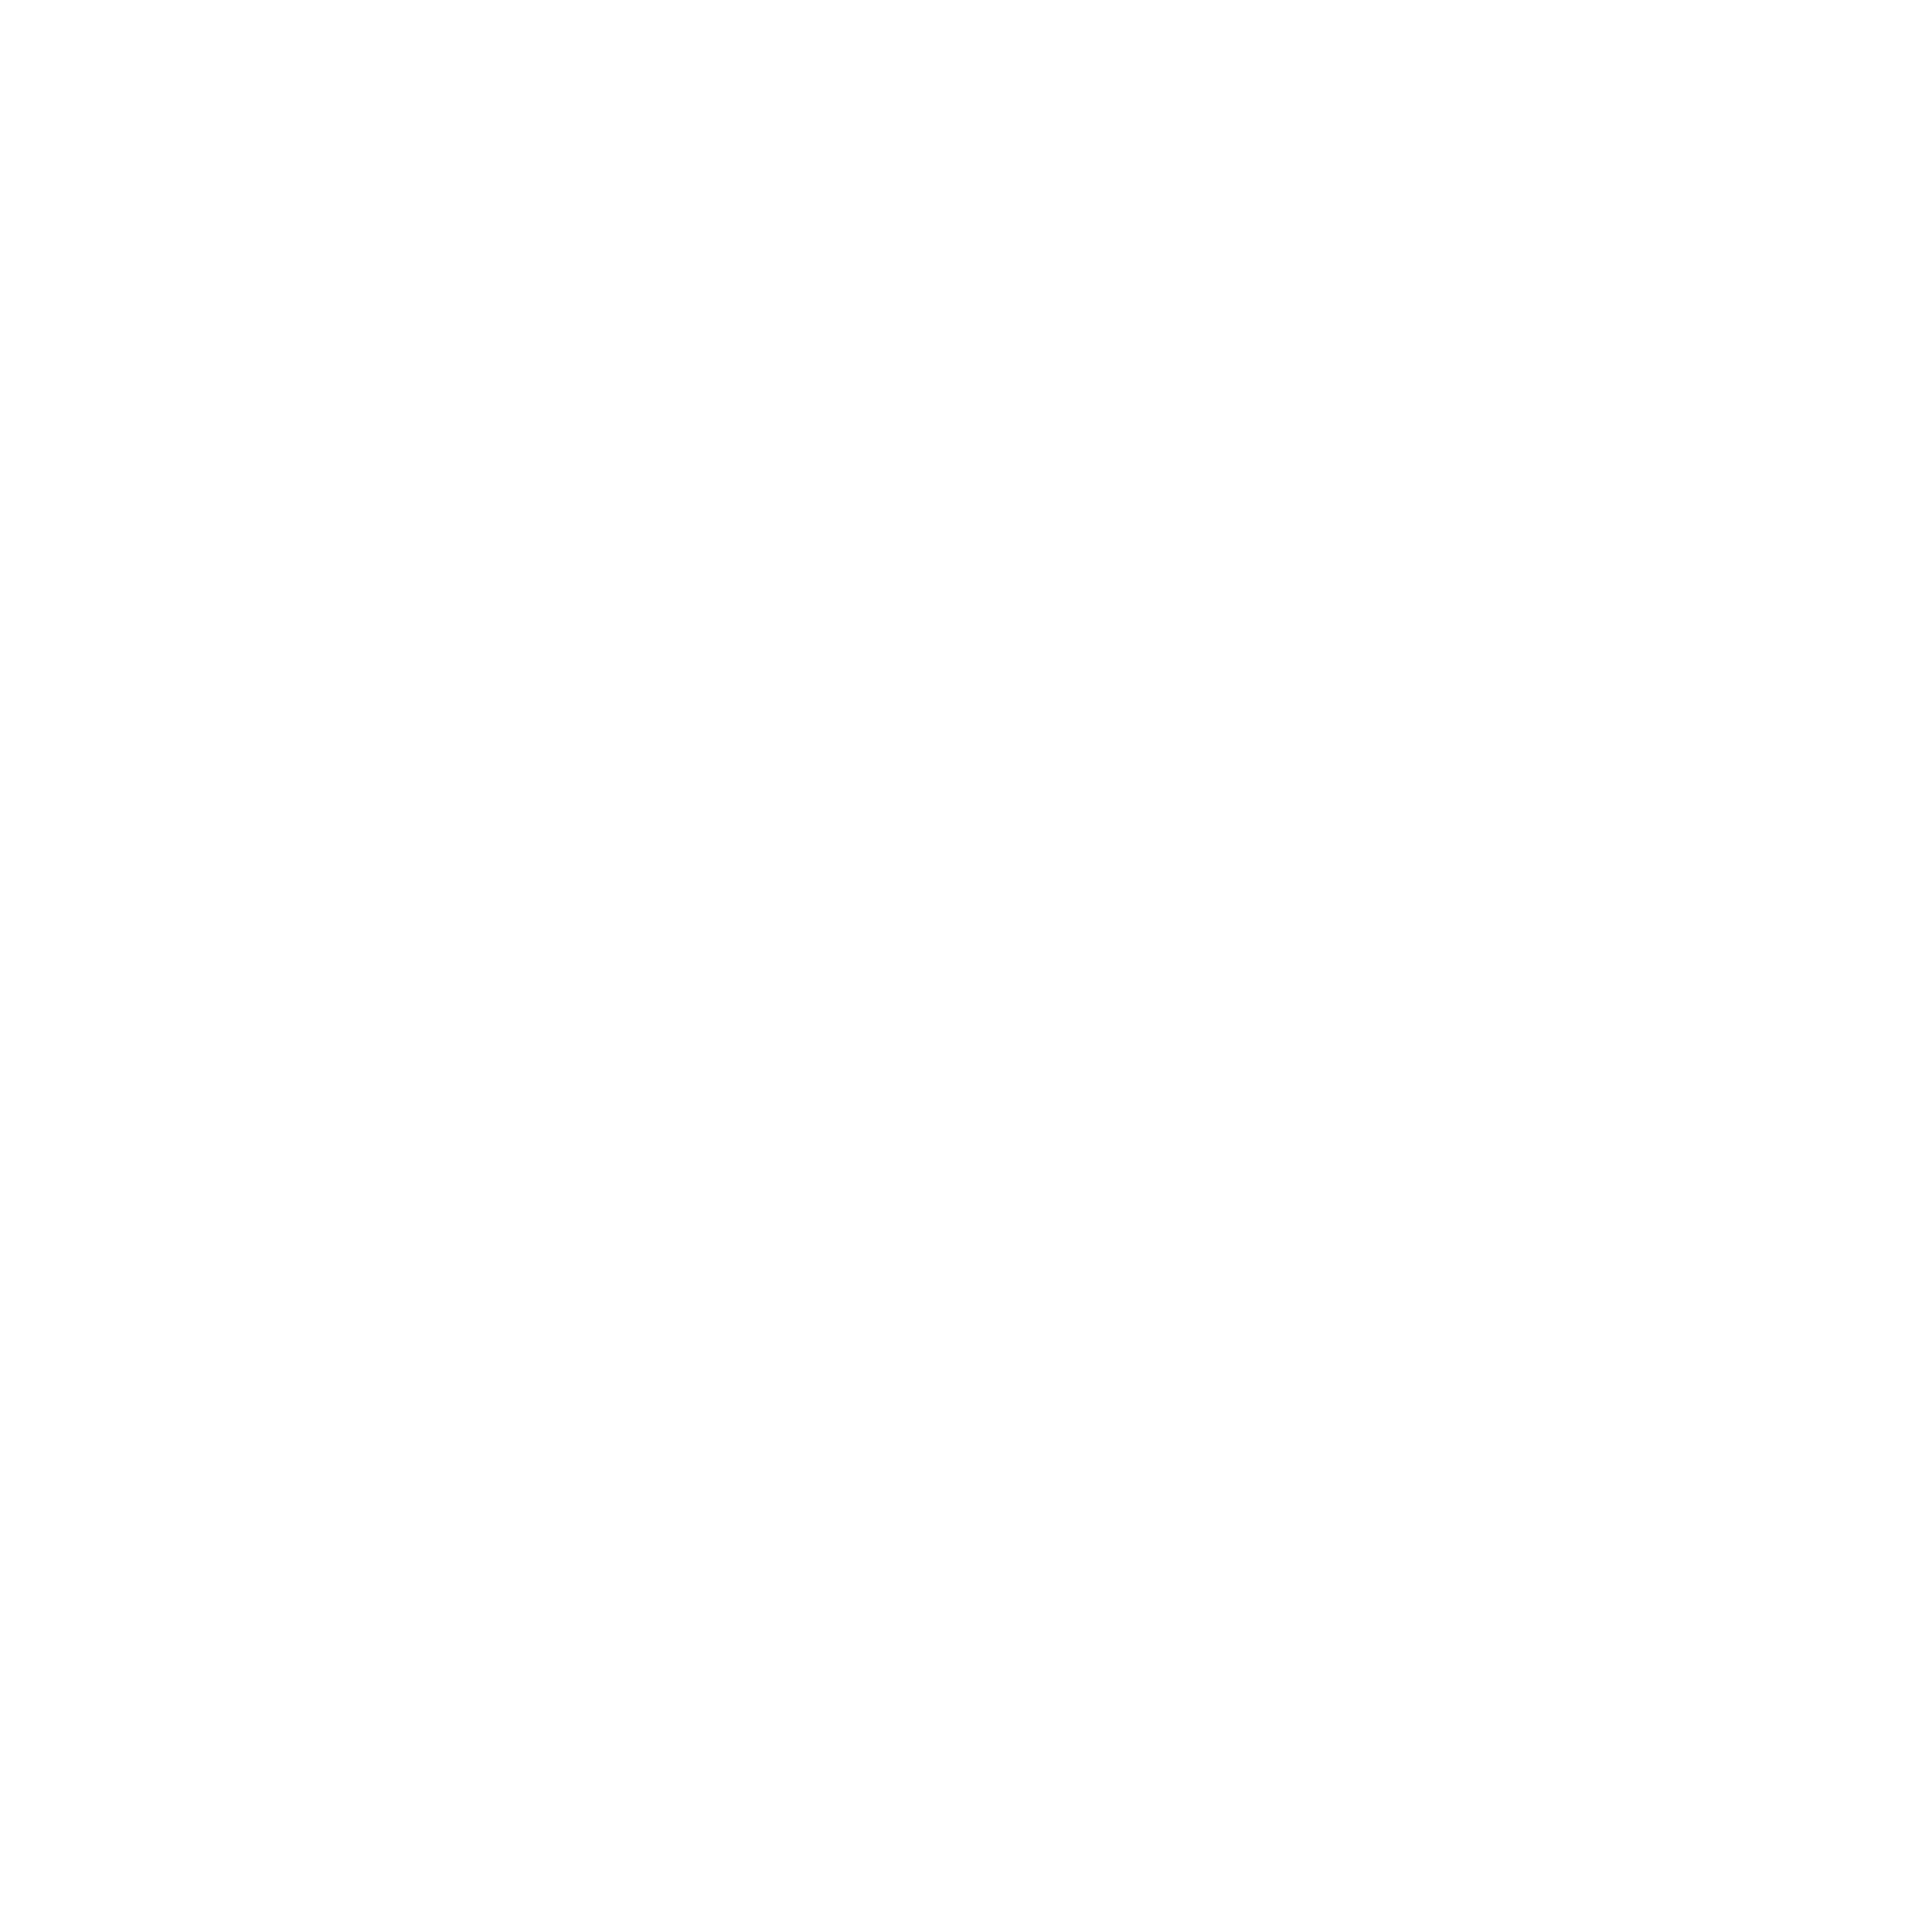 Pophouse